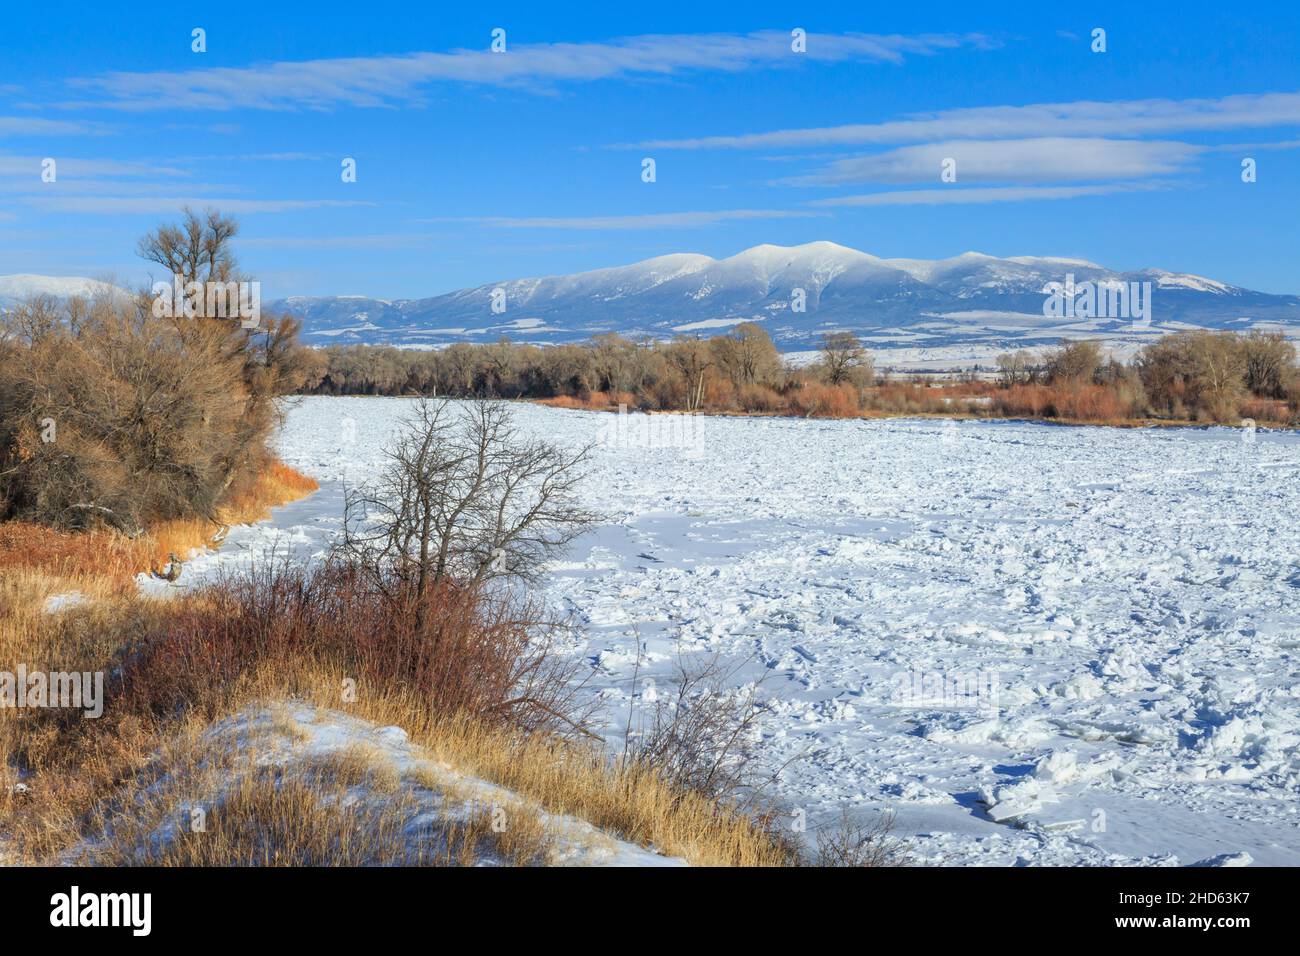 confiture de glace sur le fleuve missouri en hiver sous le mont baldy à townsend, montana Banque D'Images